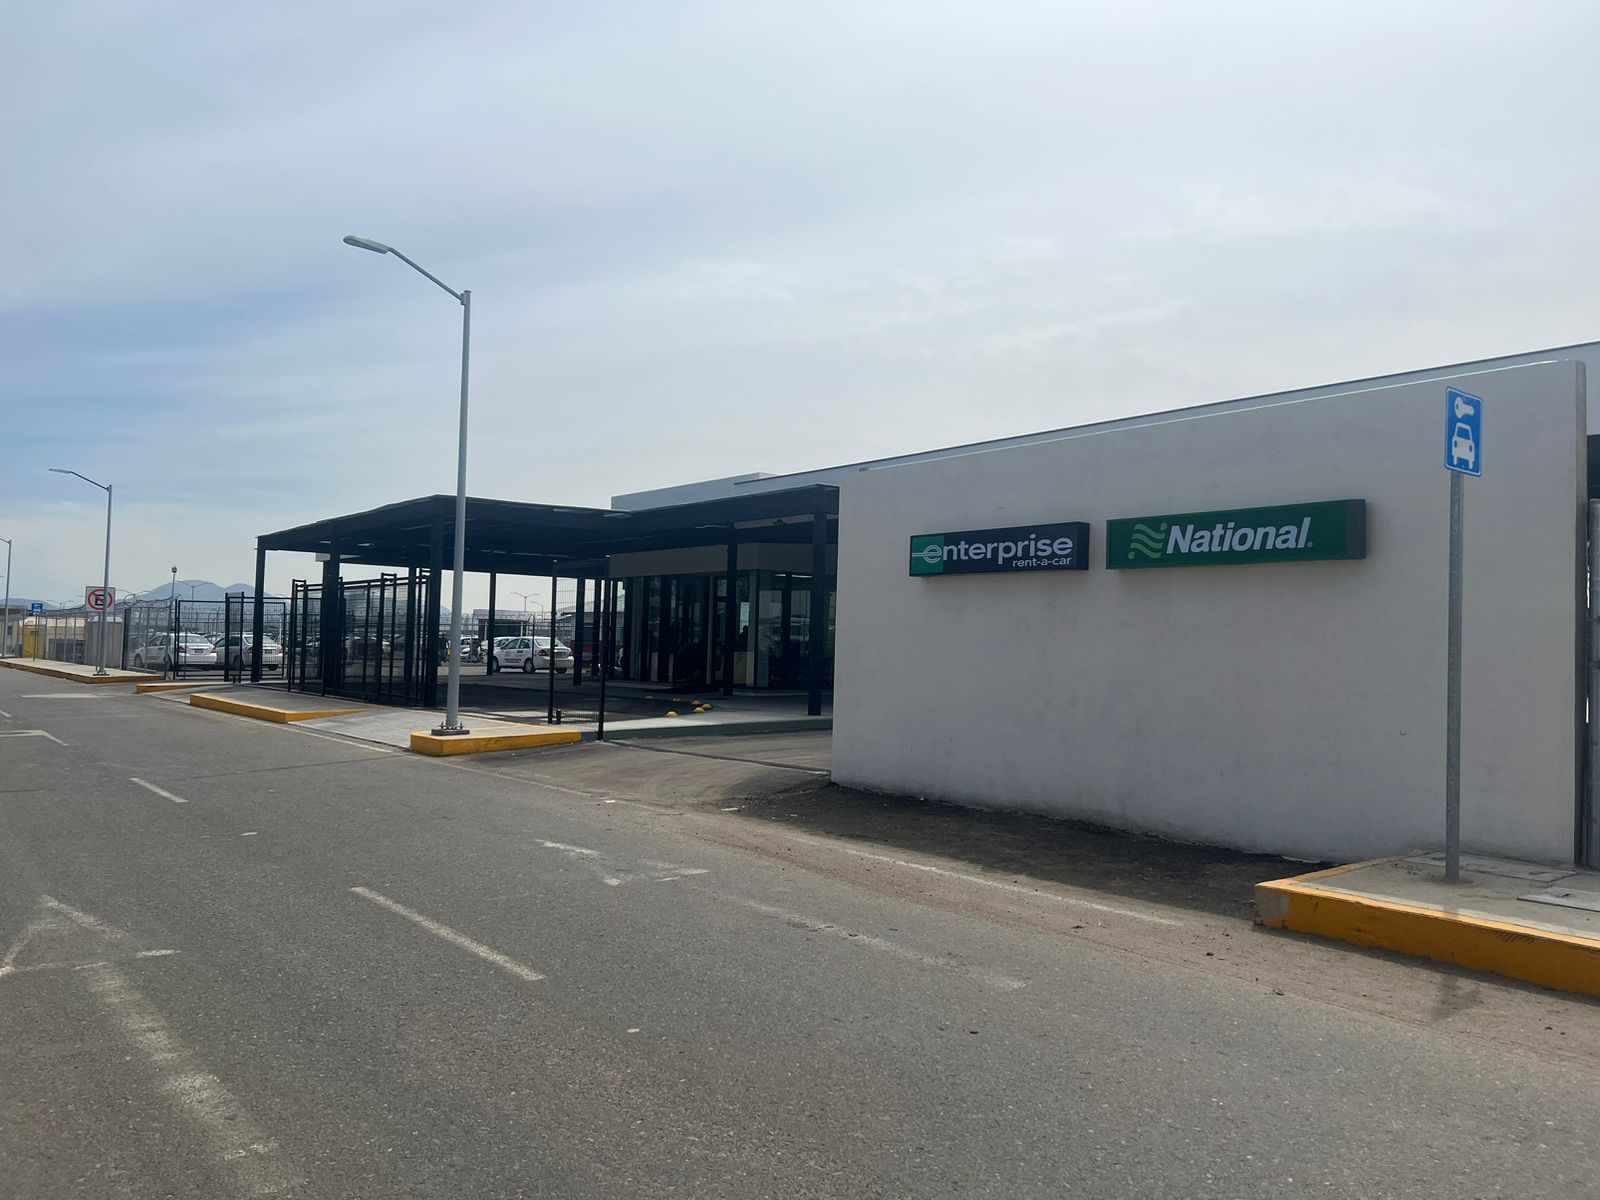 Renta de Autos en Tijuana - Aeropuerto Internacional